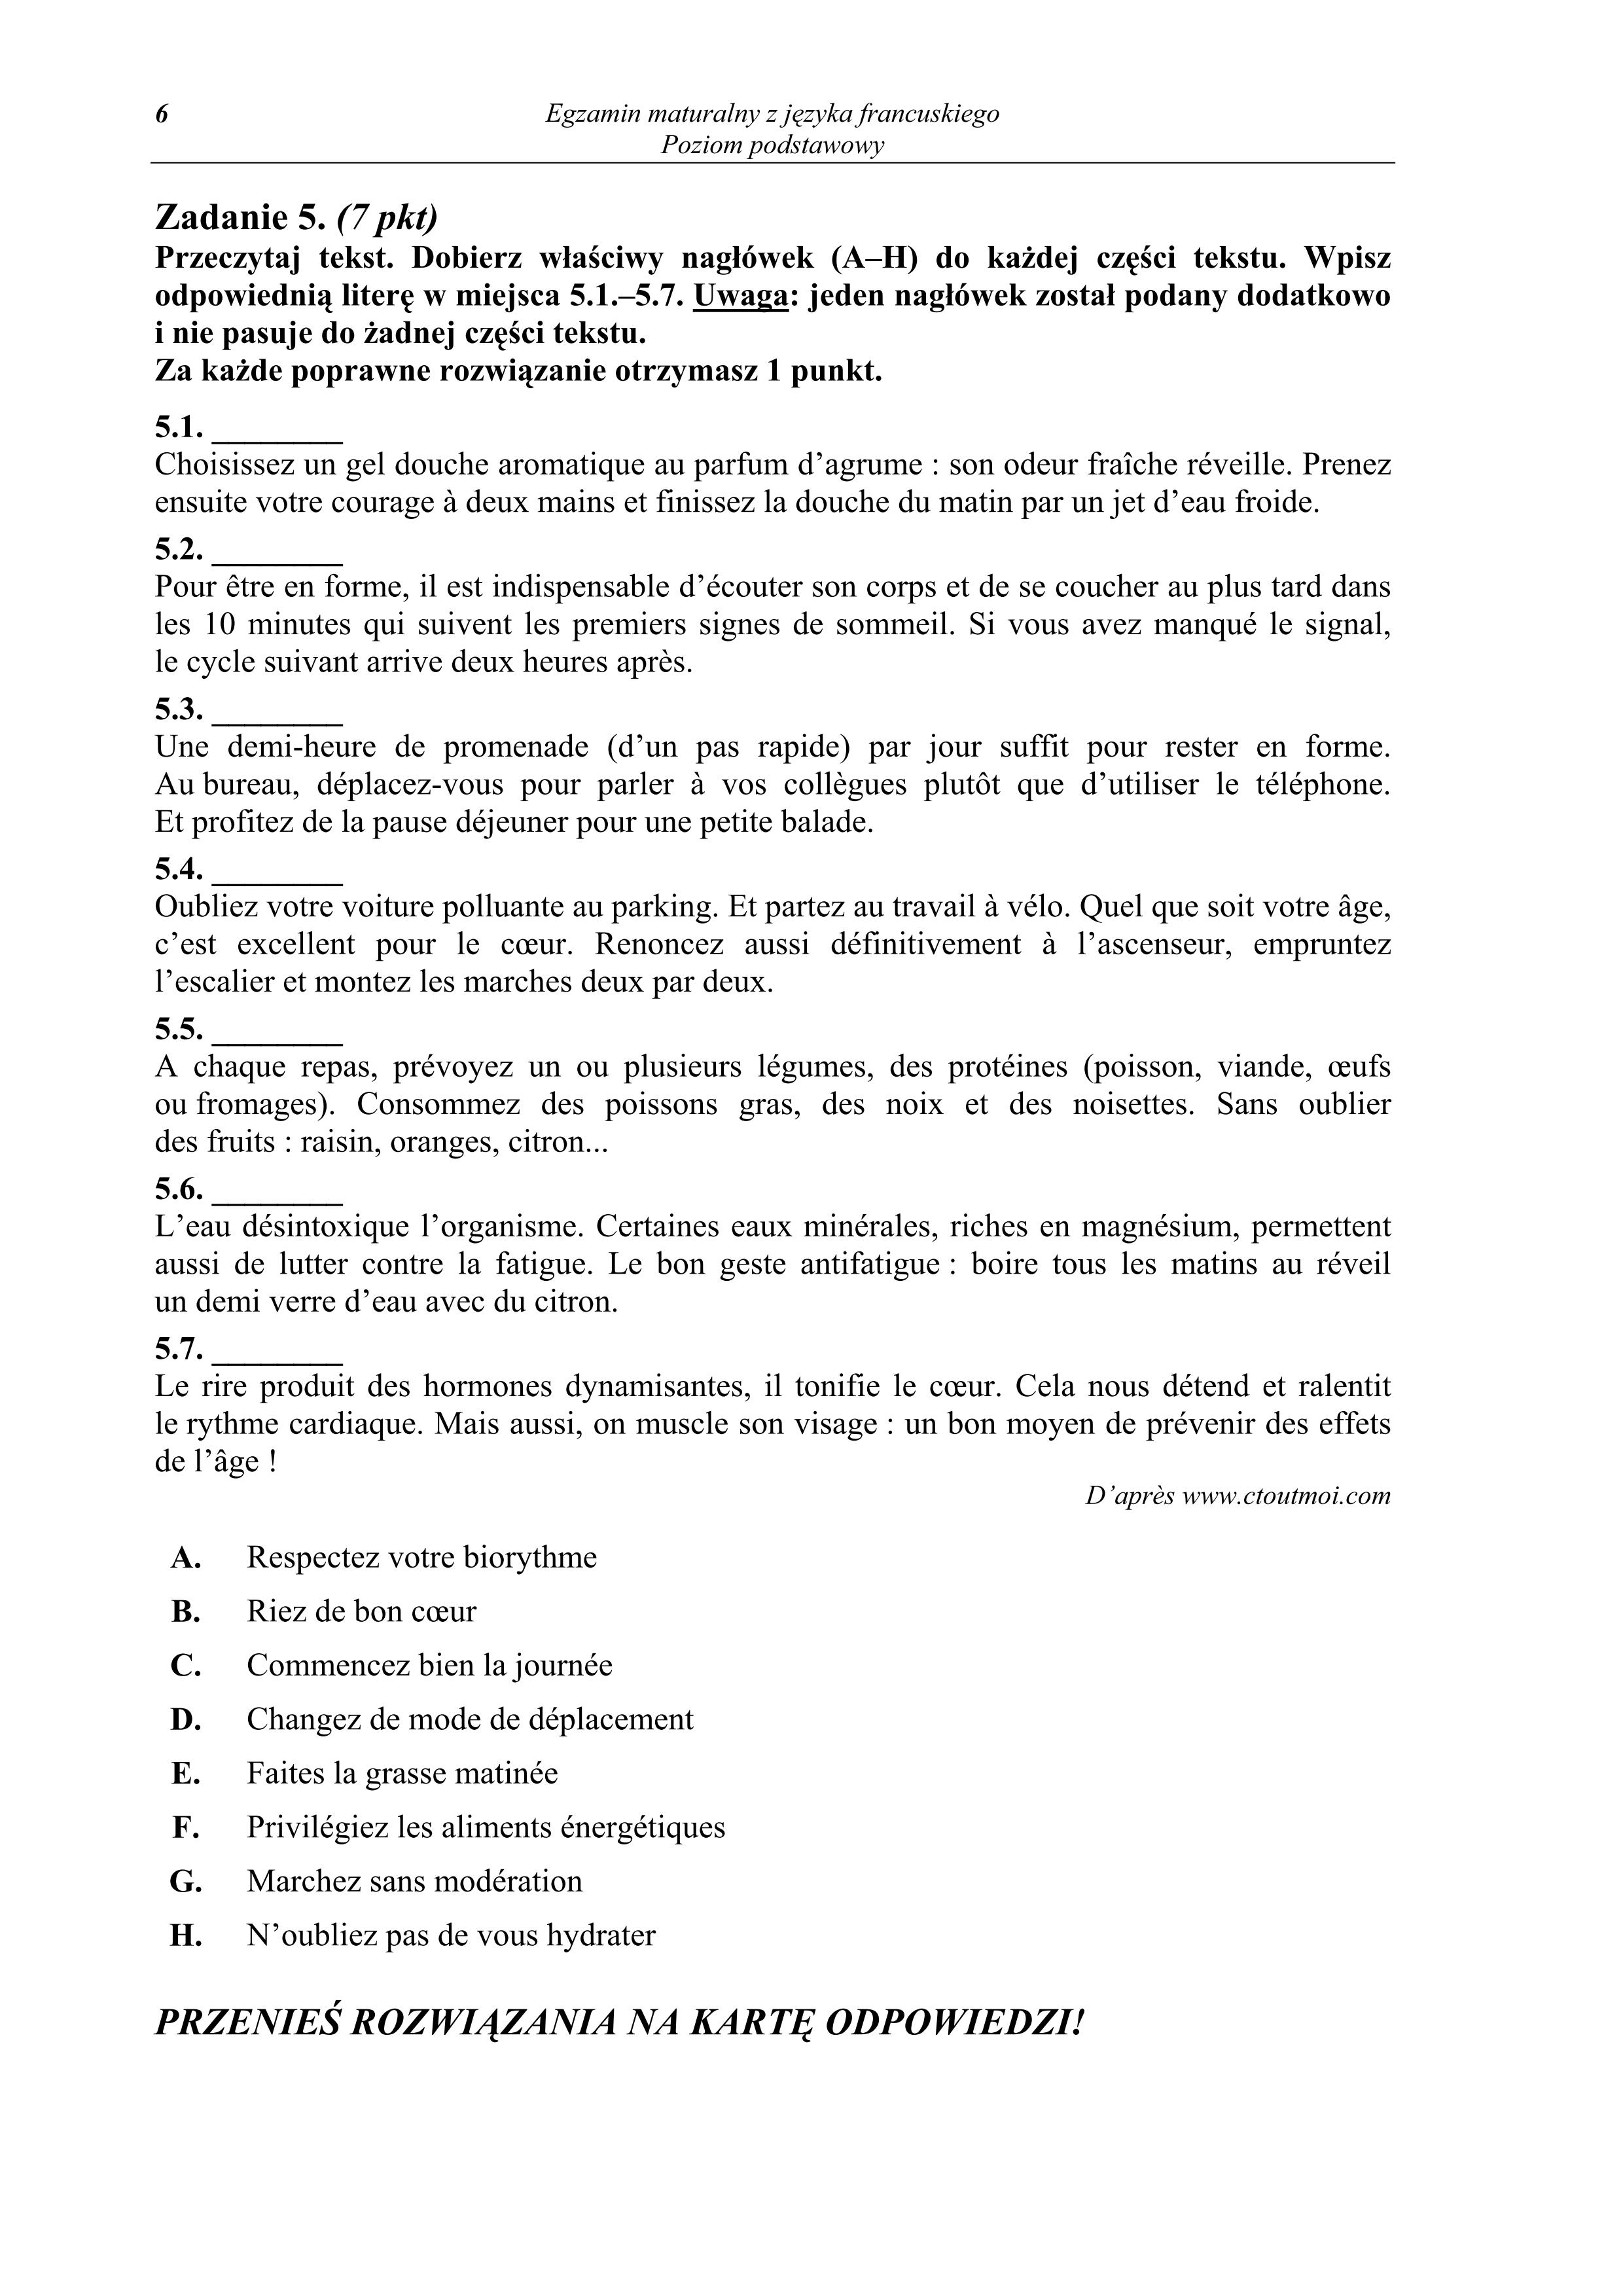 pytania-jezyk-francuski-poziom-podstawowy-matura-2011 - 6